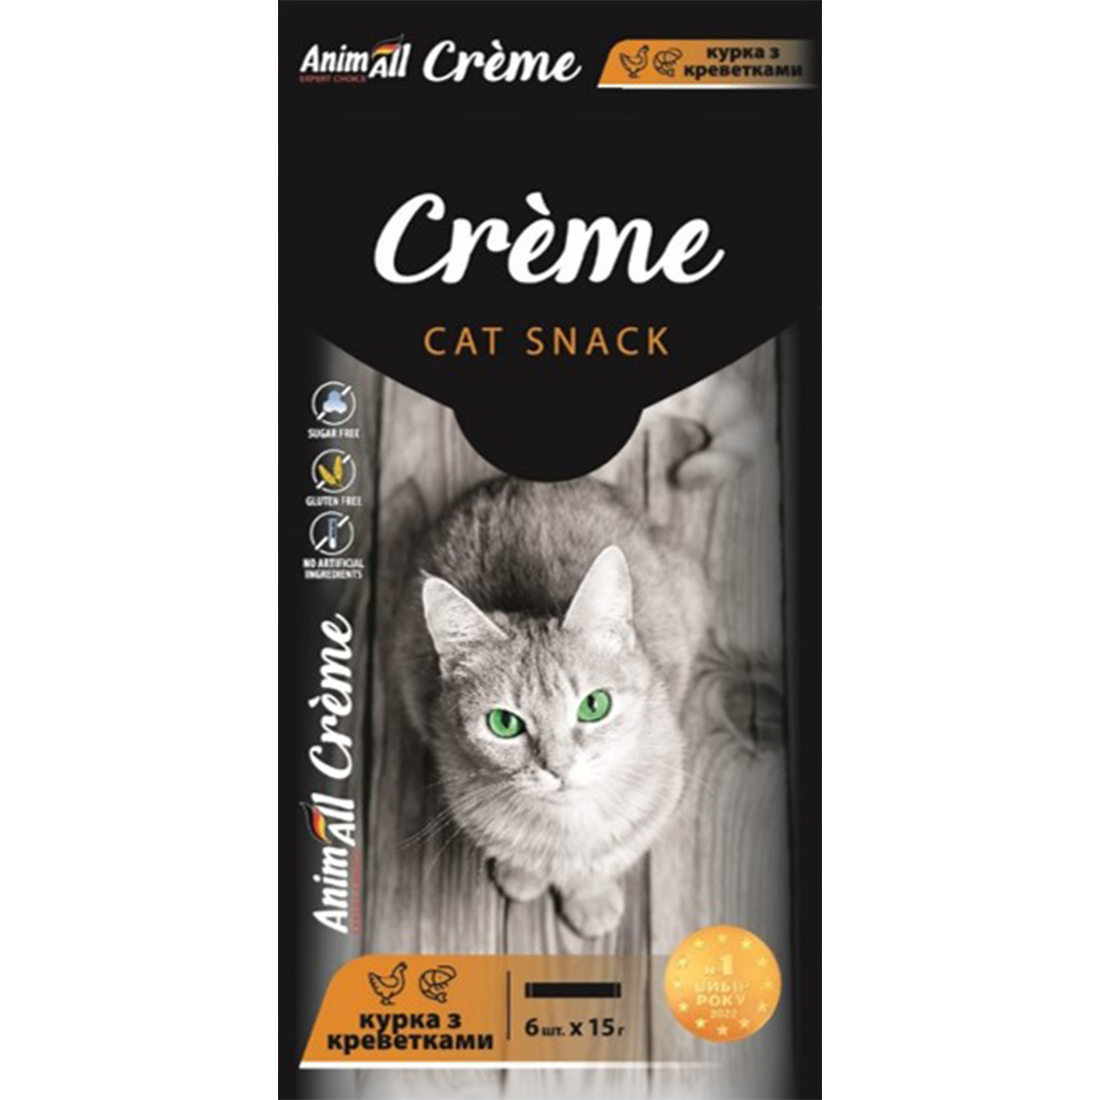 Ласощі для котів AnimAll Crеme зі смаком курки з креветками 6 шт. х 15 г - фото 1